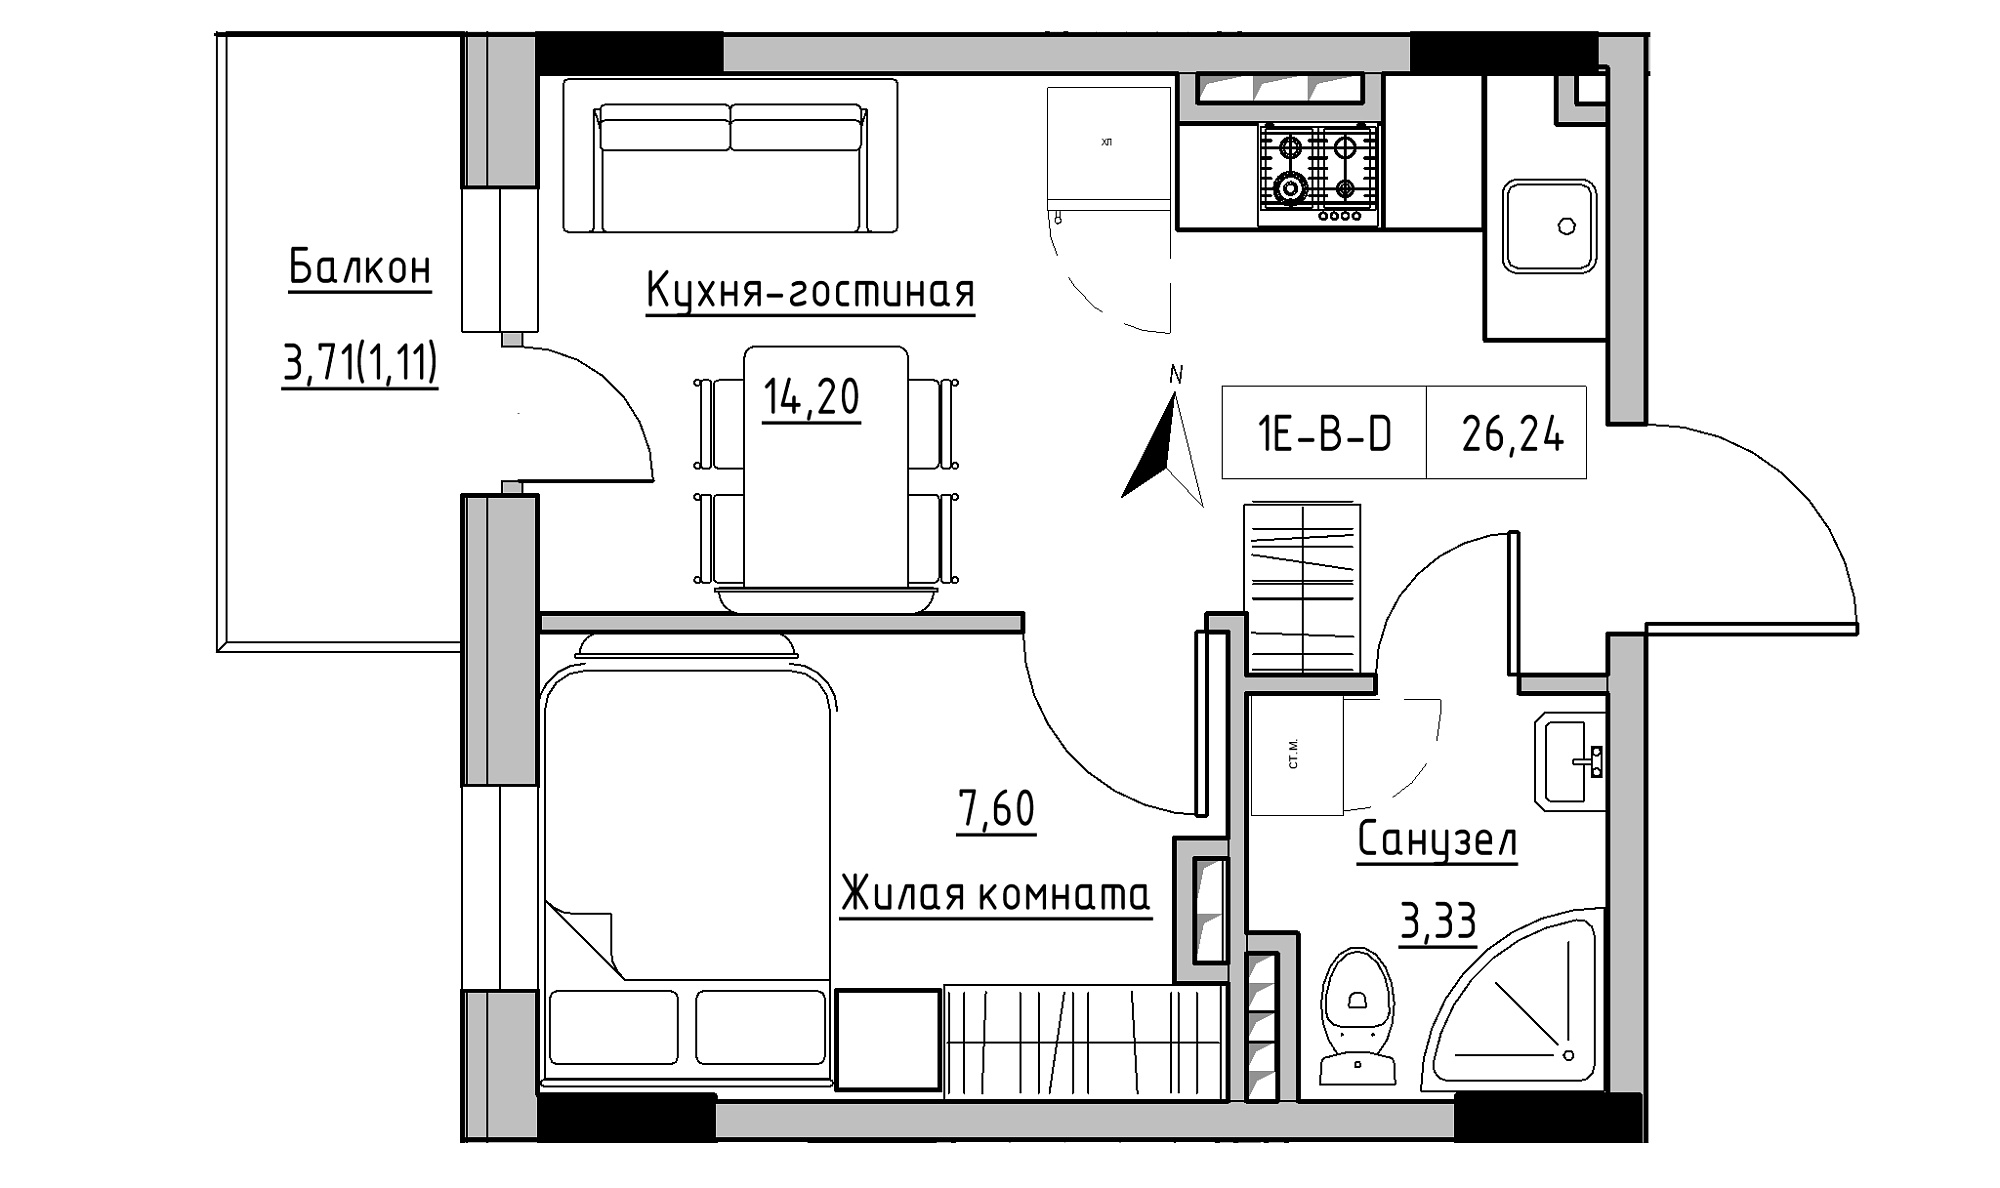 Планування 1-к квартира площею 26.24м2, KS-025-04/0005.